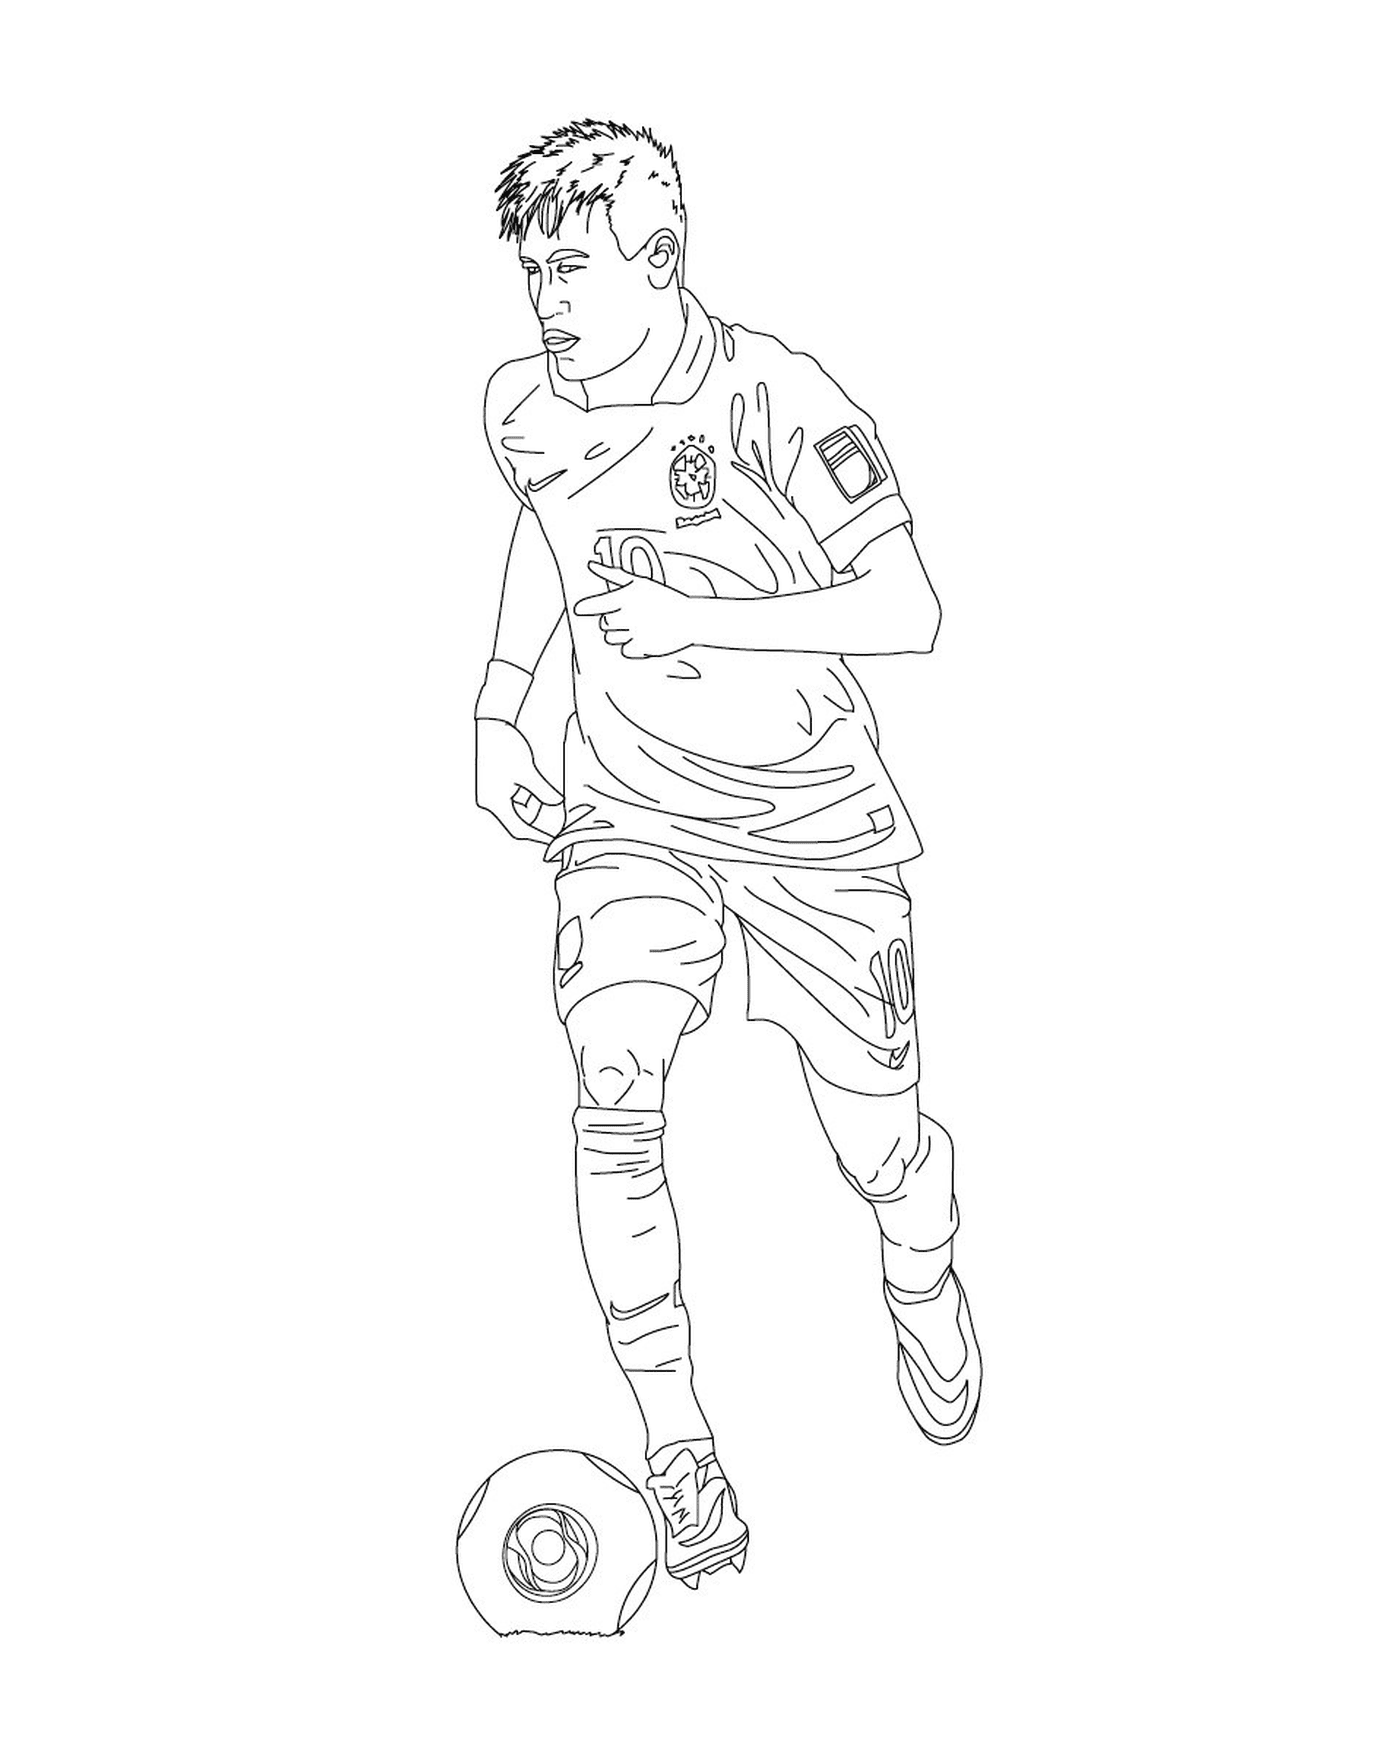  رجل يلعب كرة القدم، نيمار 